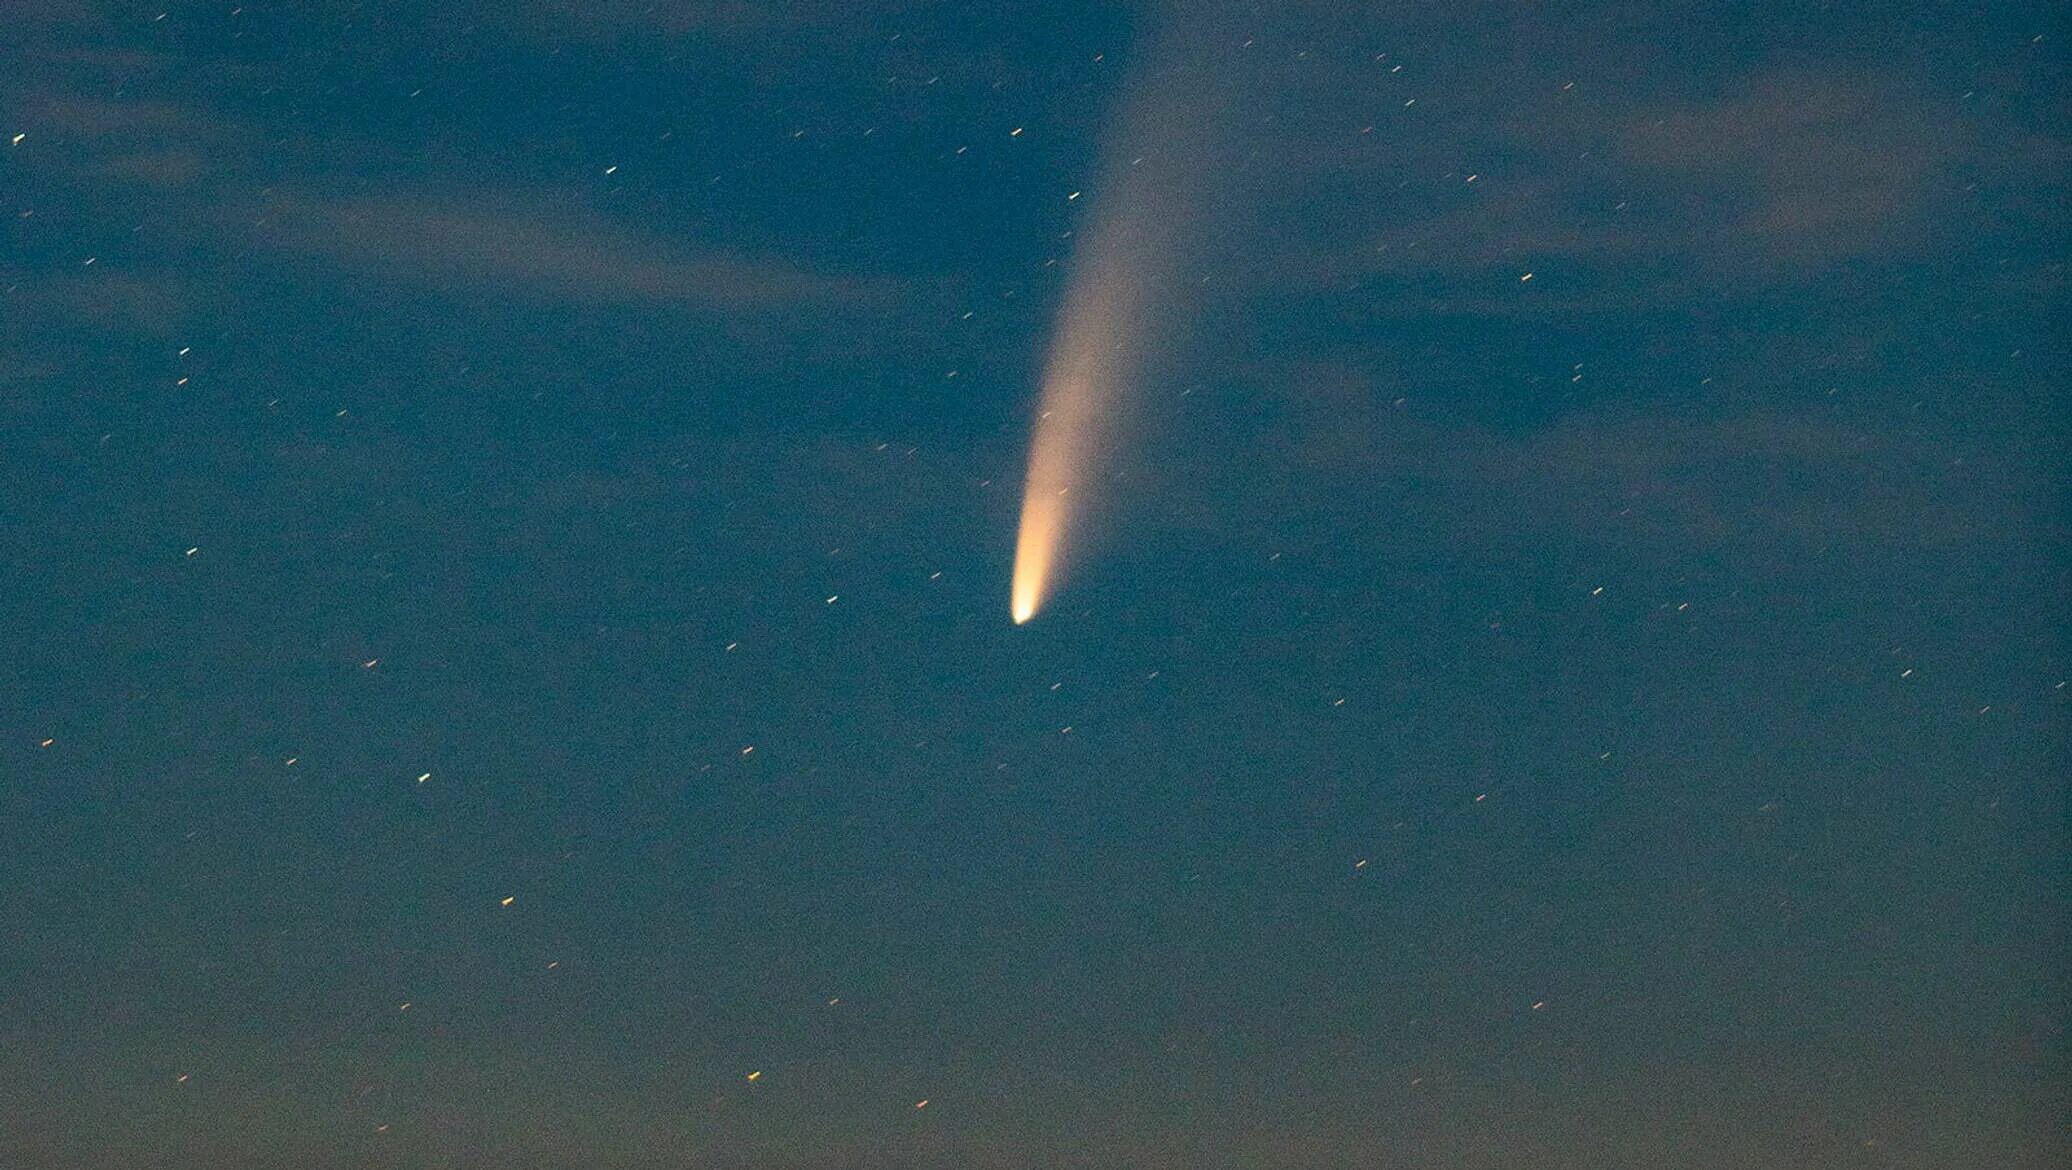 Комета в хабаровске сегодня. Комета. Комета близкая. Комета над землей. Комета в 2000 году пролетавшая.